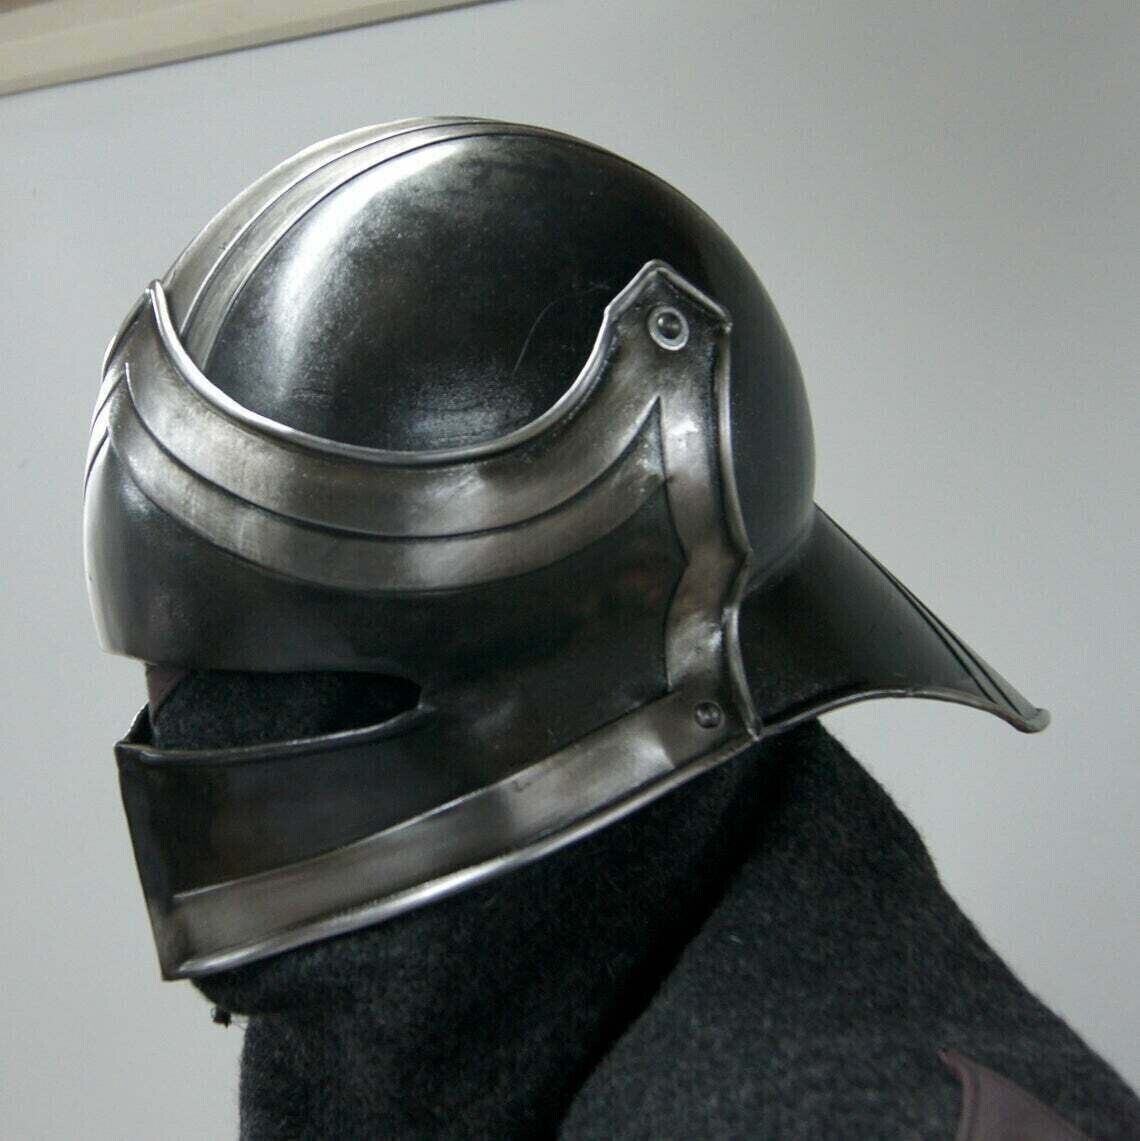 Blackened 18 Gauge Steel Medieval Dark knight Sallet Helmet x-mas gift item